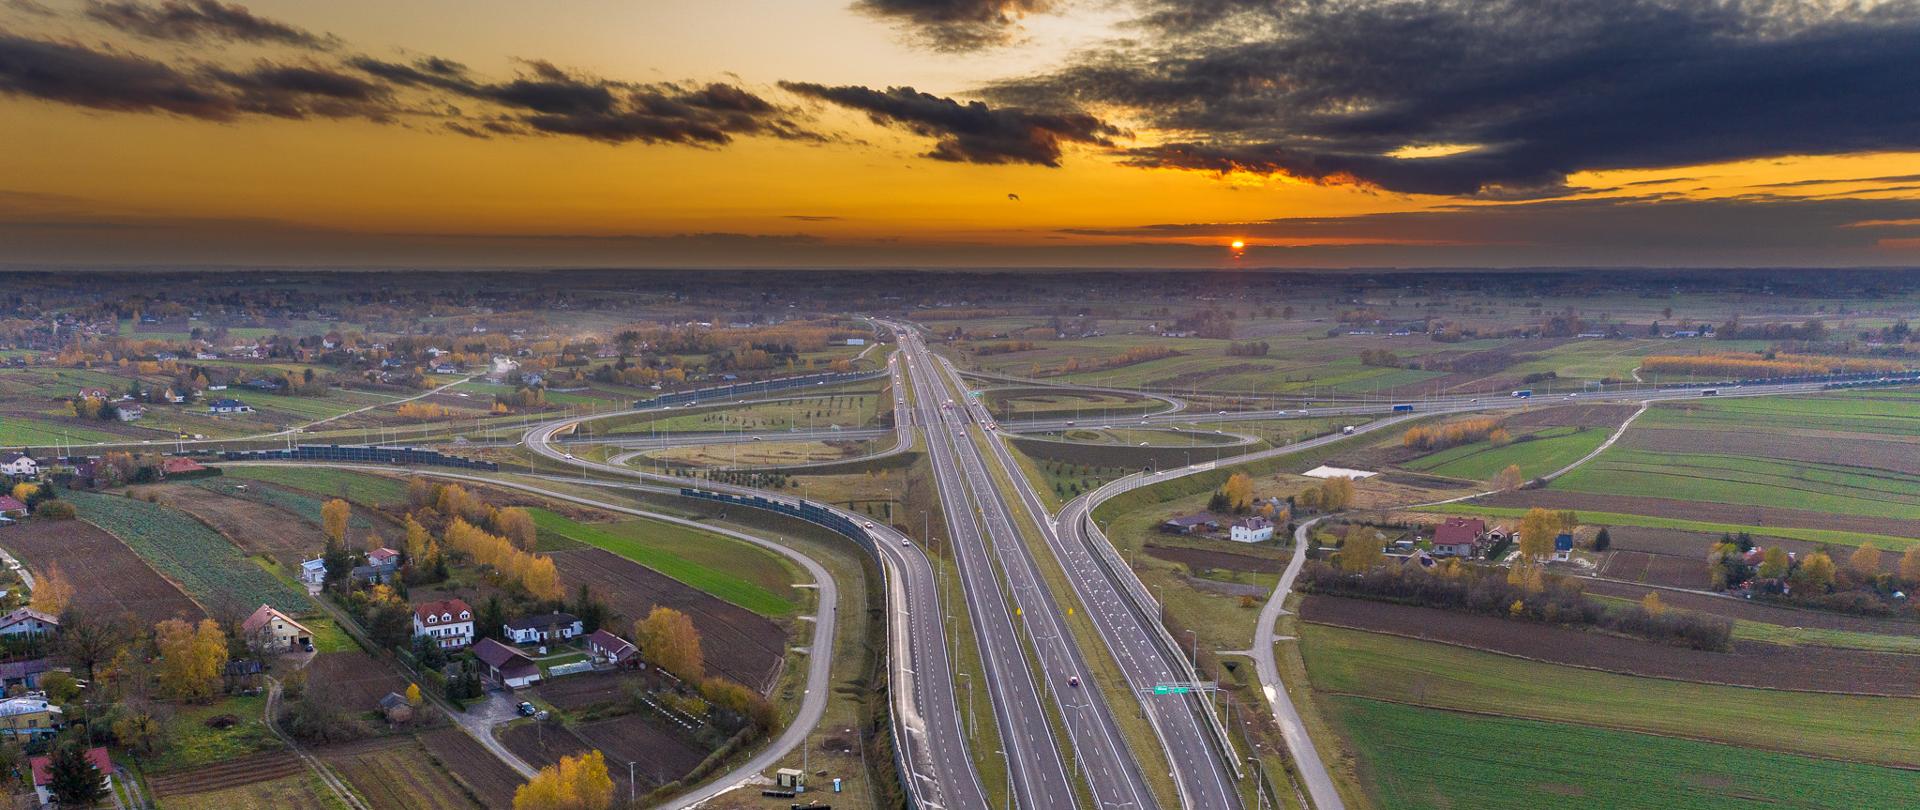 Zdjęcie lotnicze drogi węzła Lublin Sławinek na połączeniu dróg ekspresowych S12 i S17. Zdjęcie wykonane przy zachodzie Słońca. Widoczny ruch pojazdów na obu drogach ekspresowych. W tle widoczne zabudowania oraz pola uprawne i łąki.